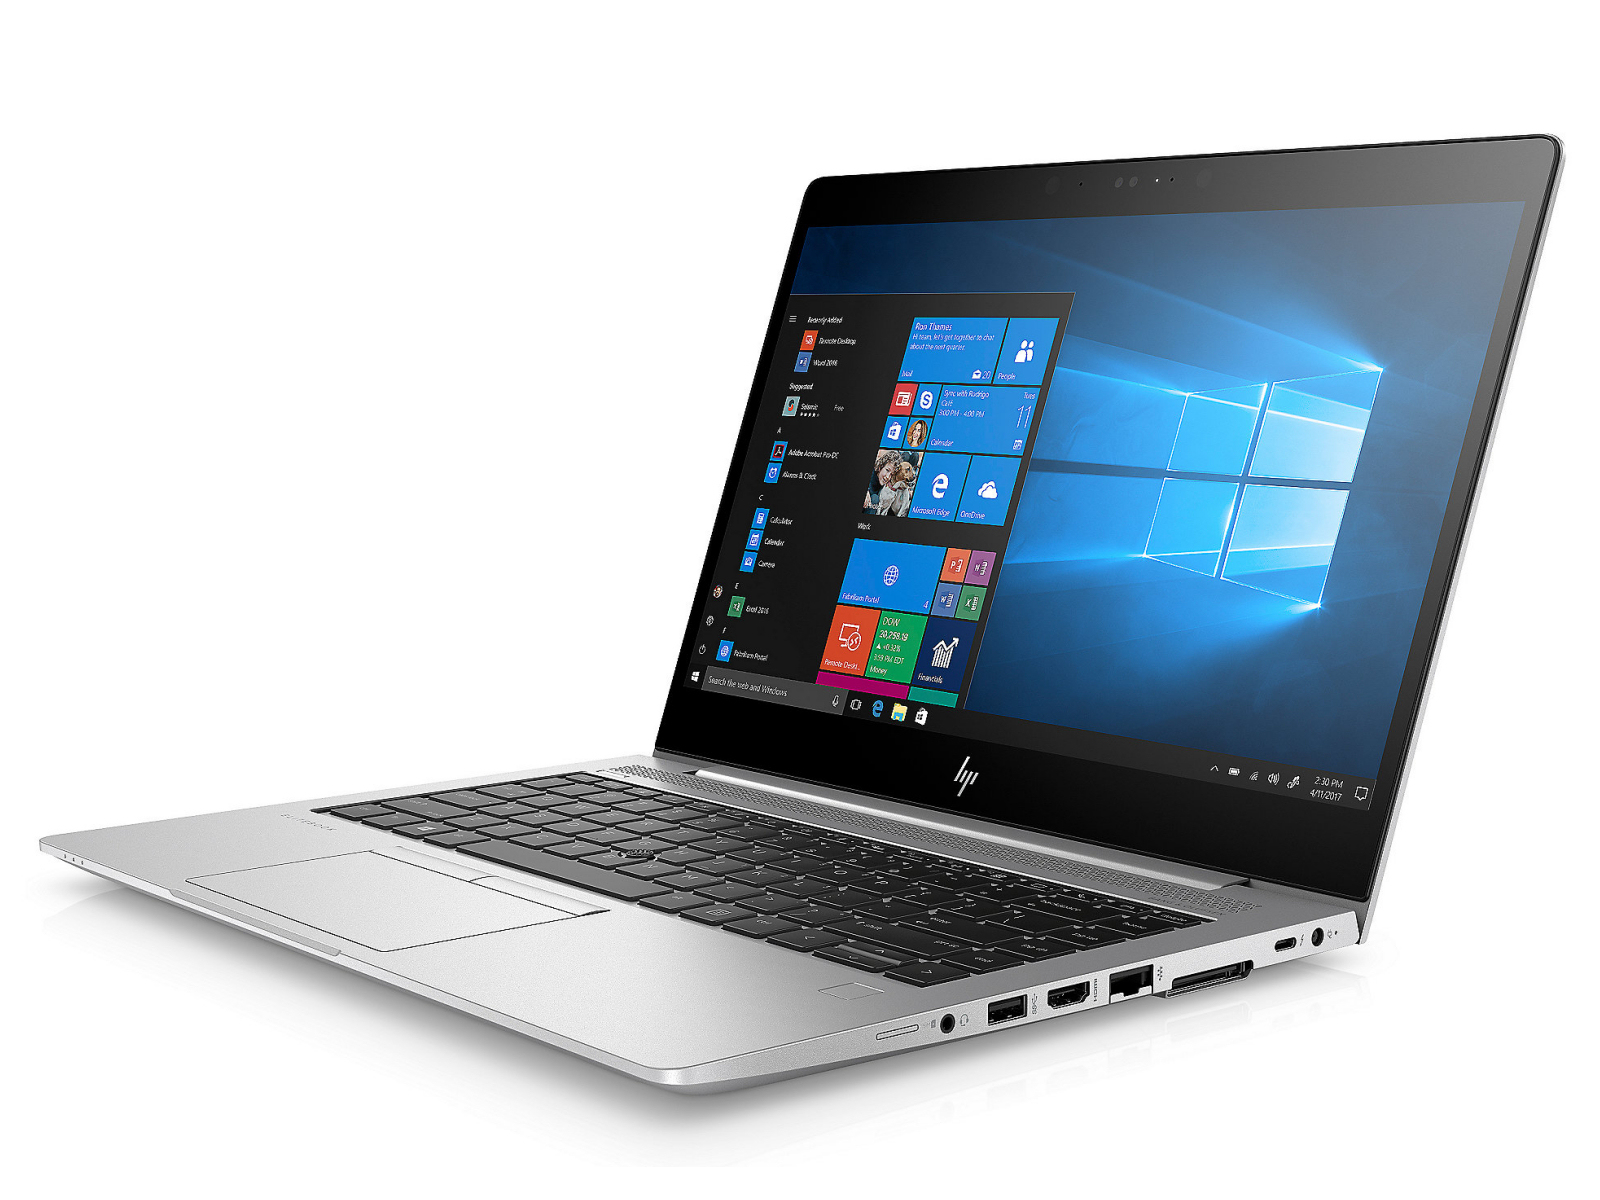 HP EliteBook 840 G5 Series - Notebookcheck.net External Reviews